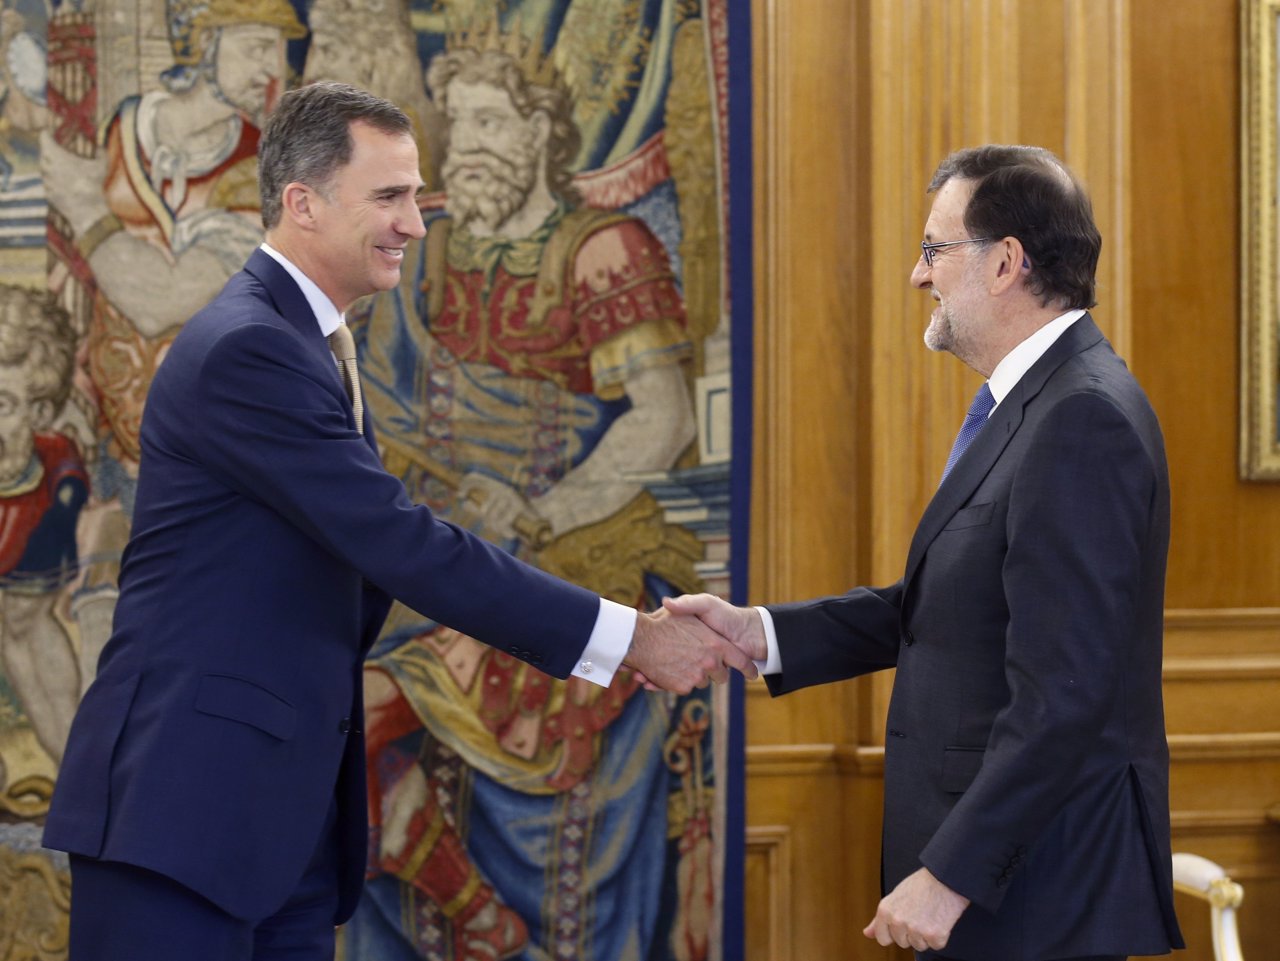 El Rey Felipe VI se reúne con Mariano Rajoy en Zarzuela 